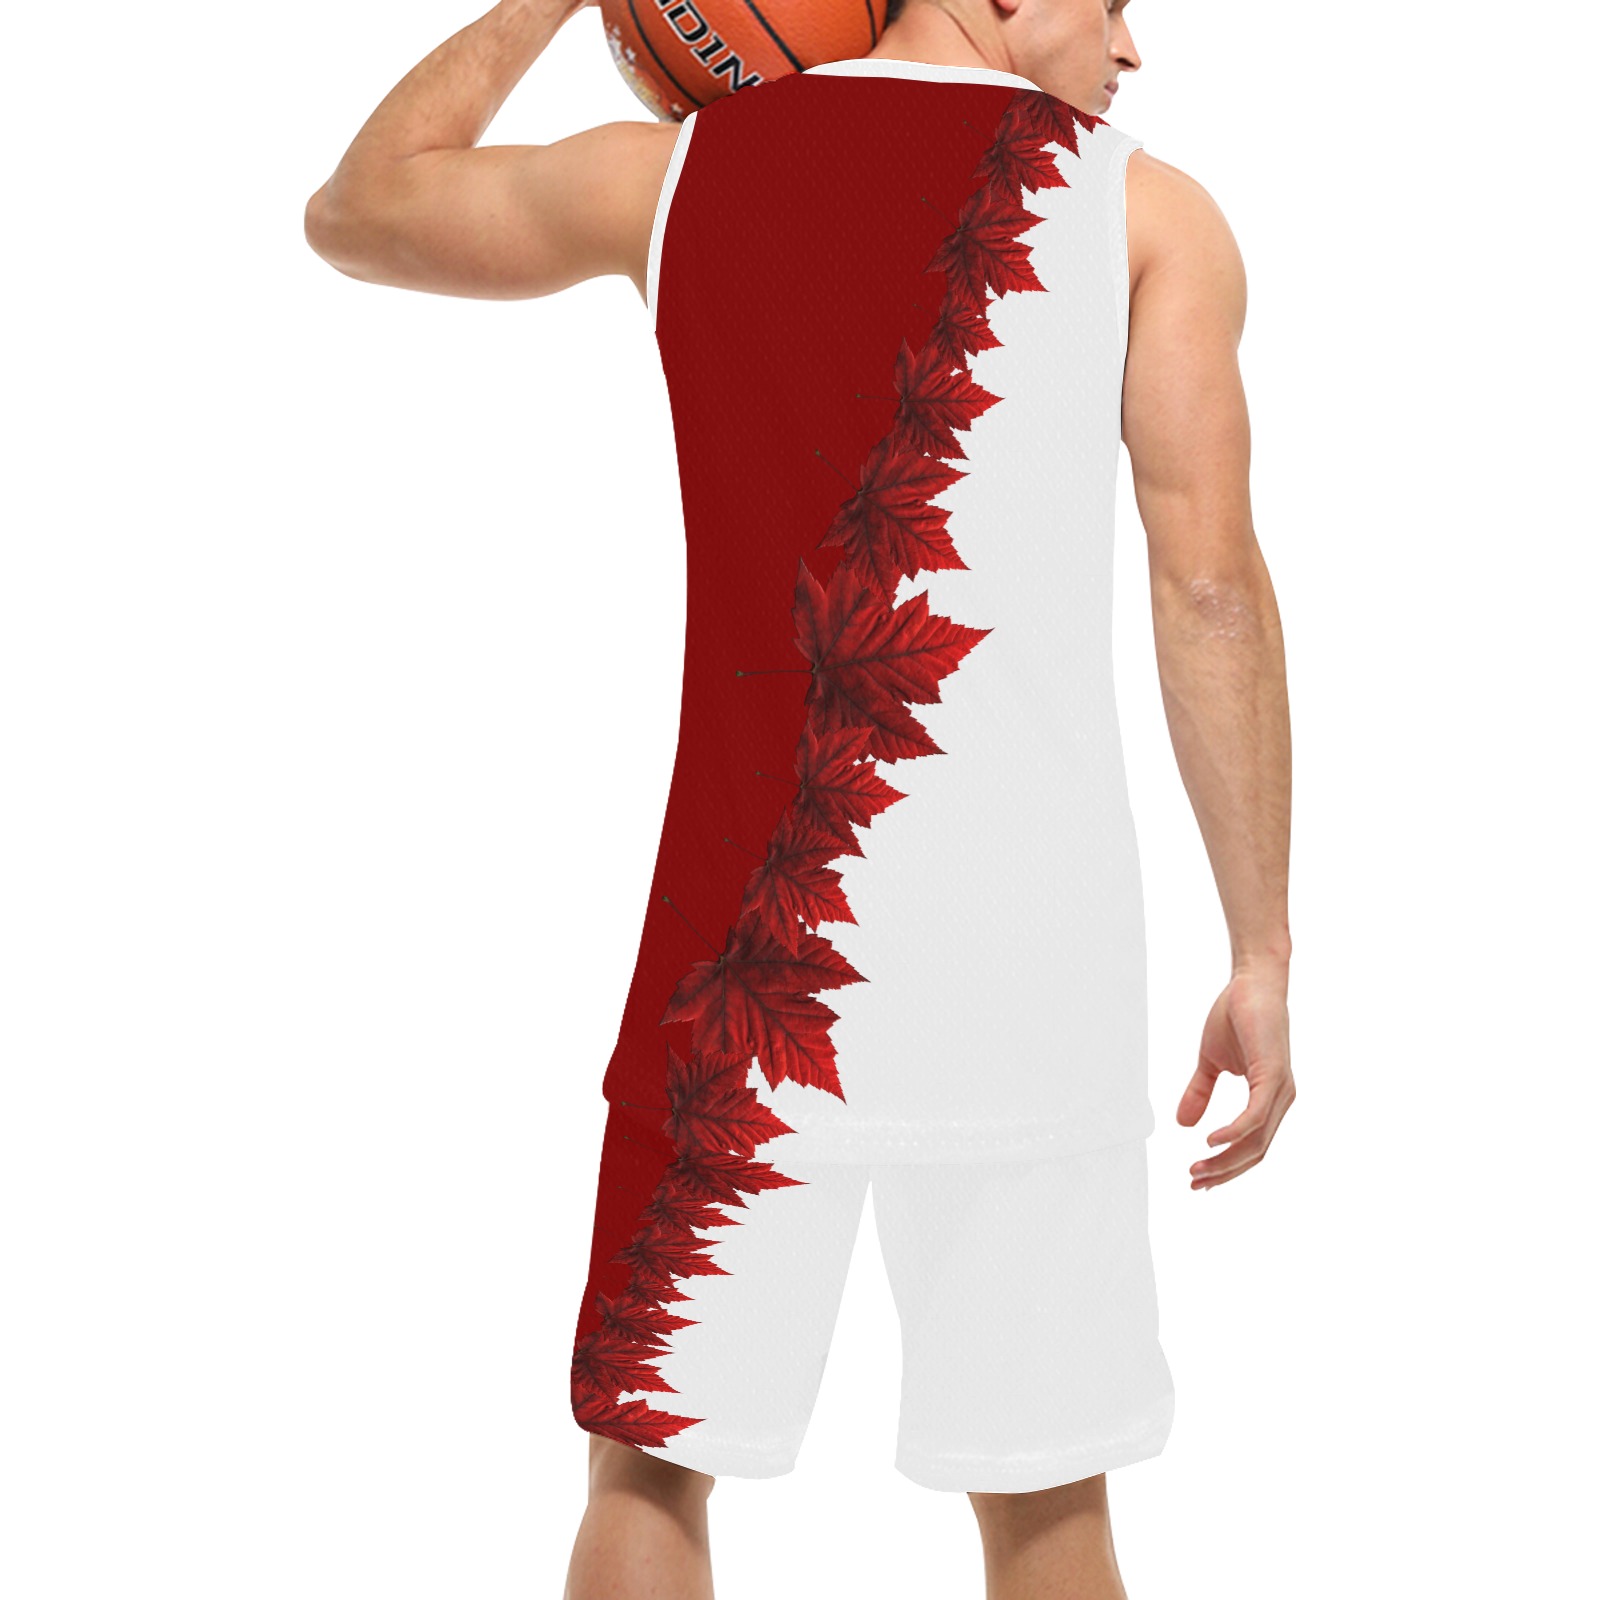 Canada Maple Leaf Team Basketball Uniform Basketball Uniform with Pocket